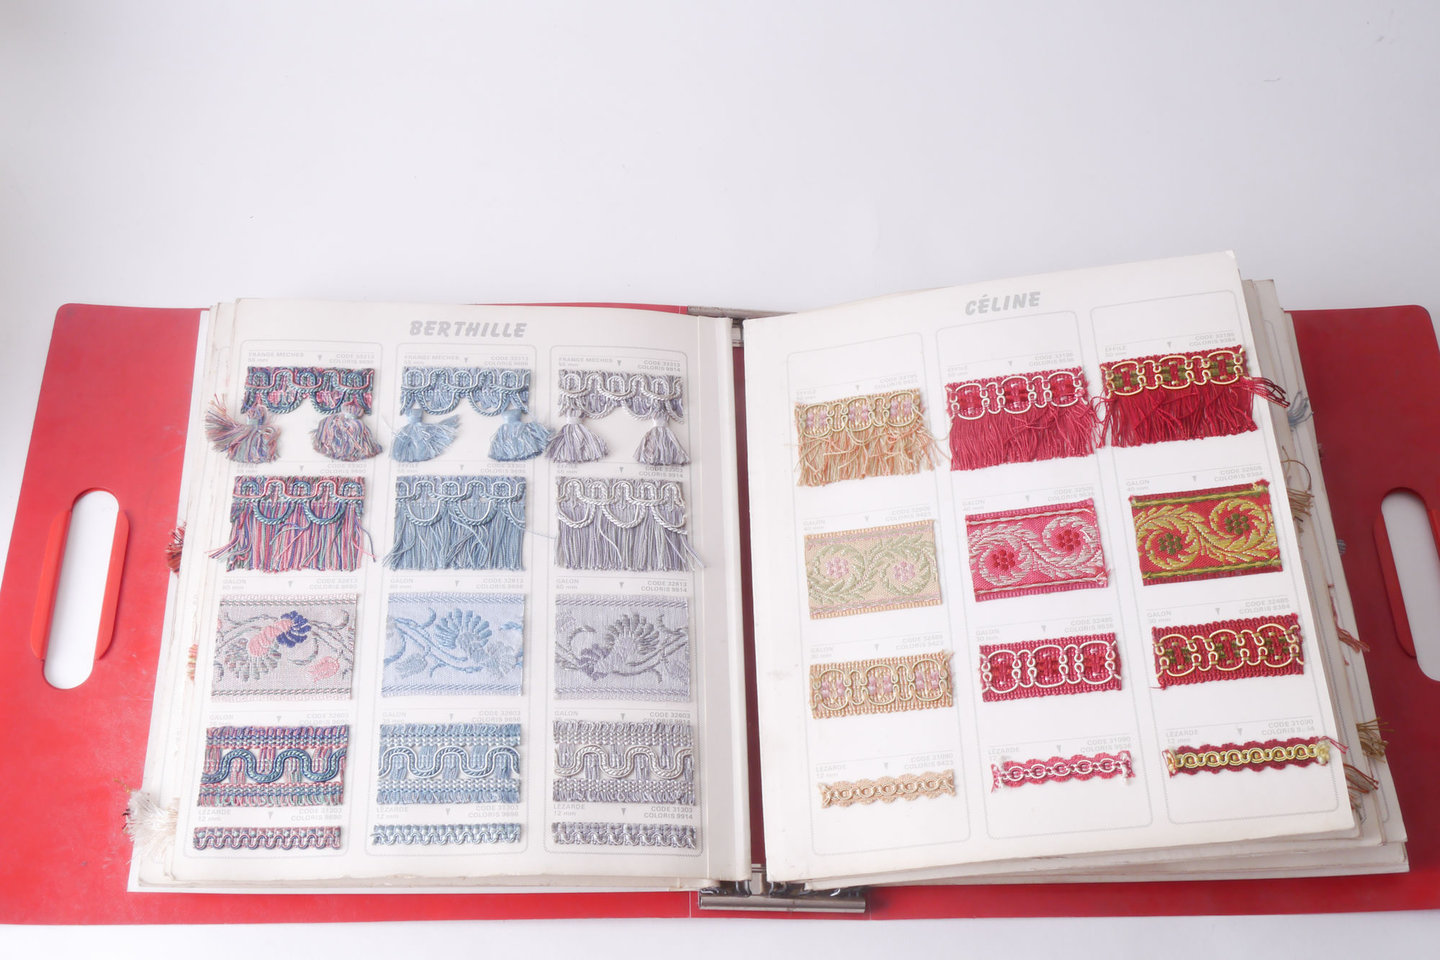 Staalboek met textielstalen om passement te vervaardigen